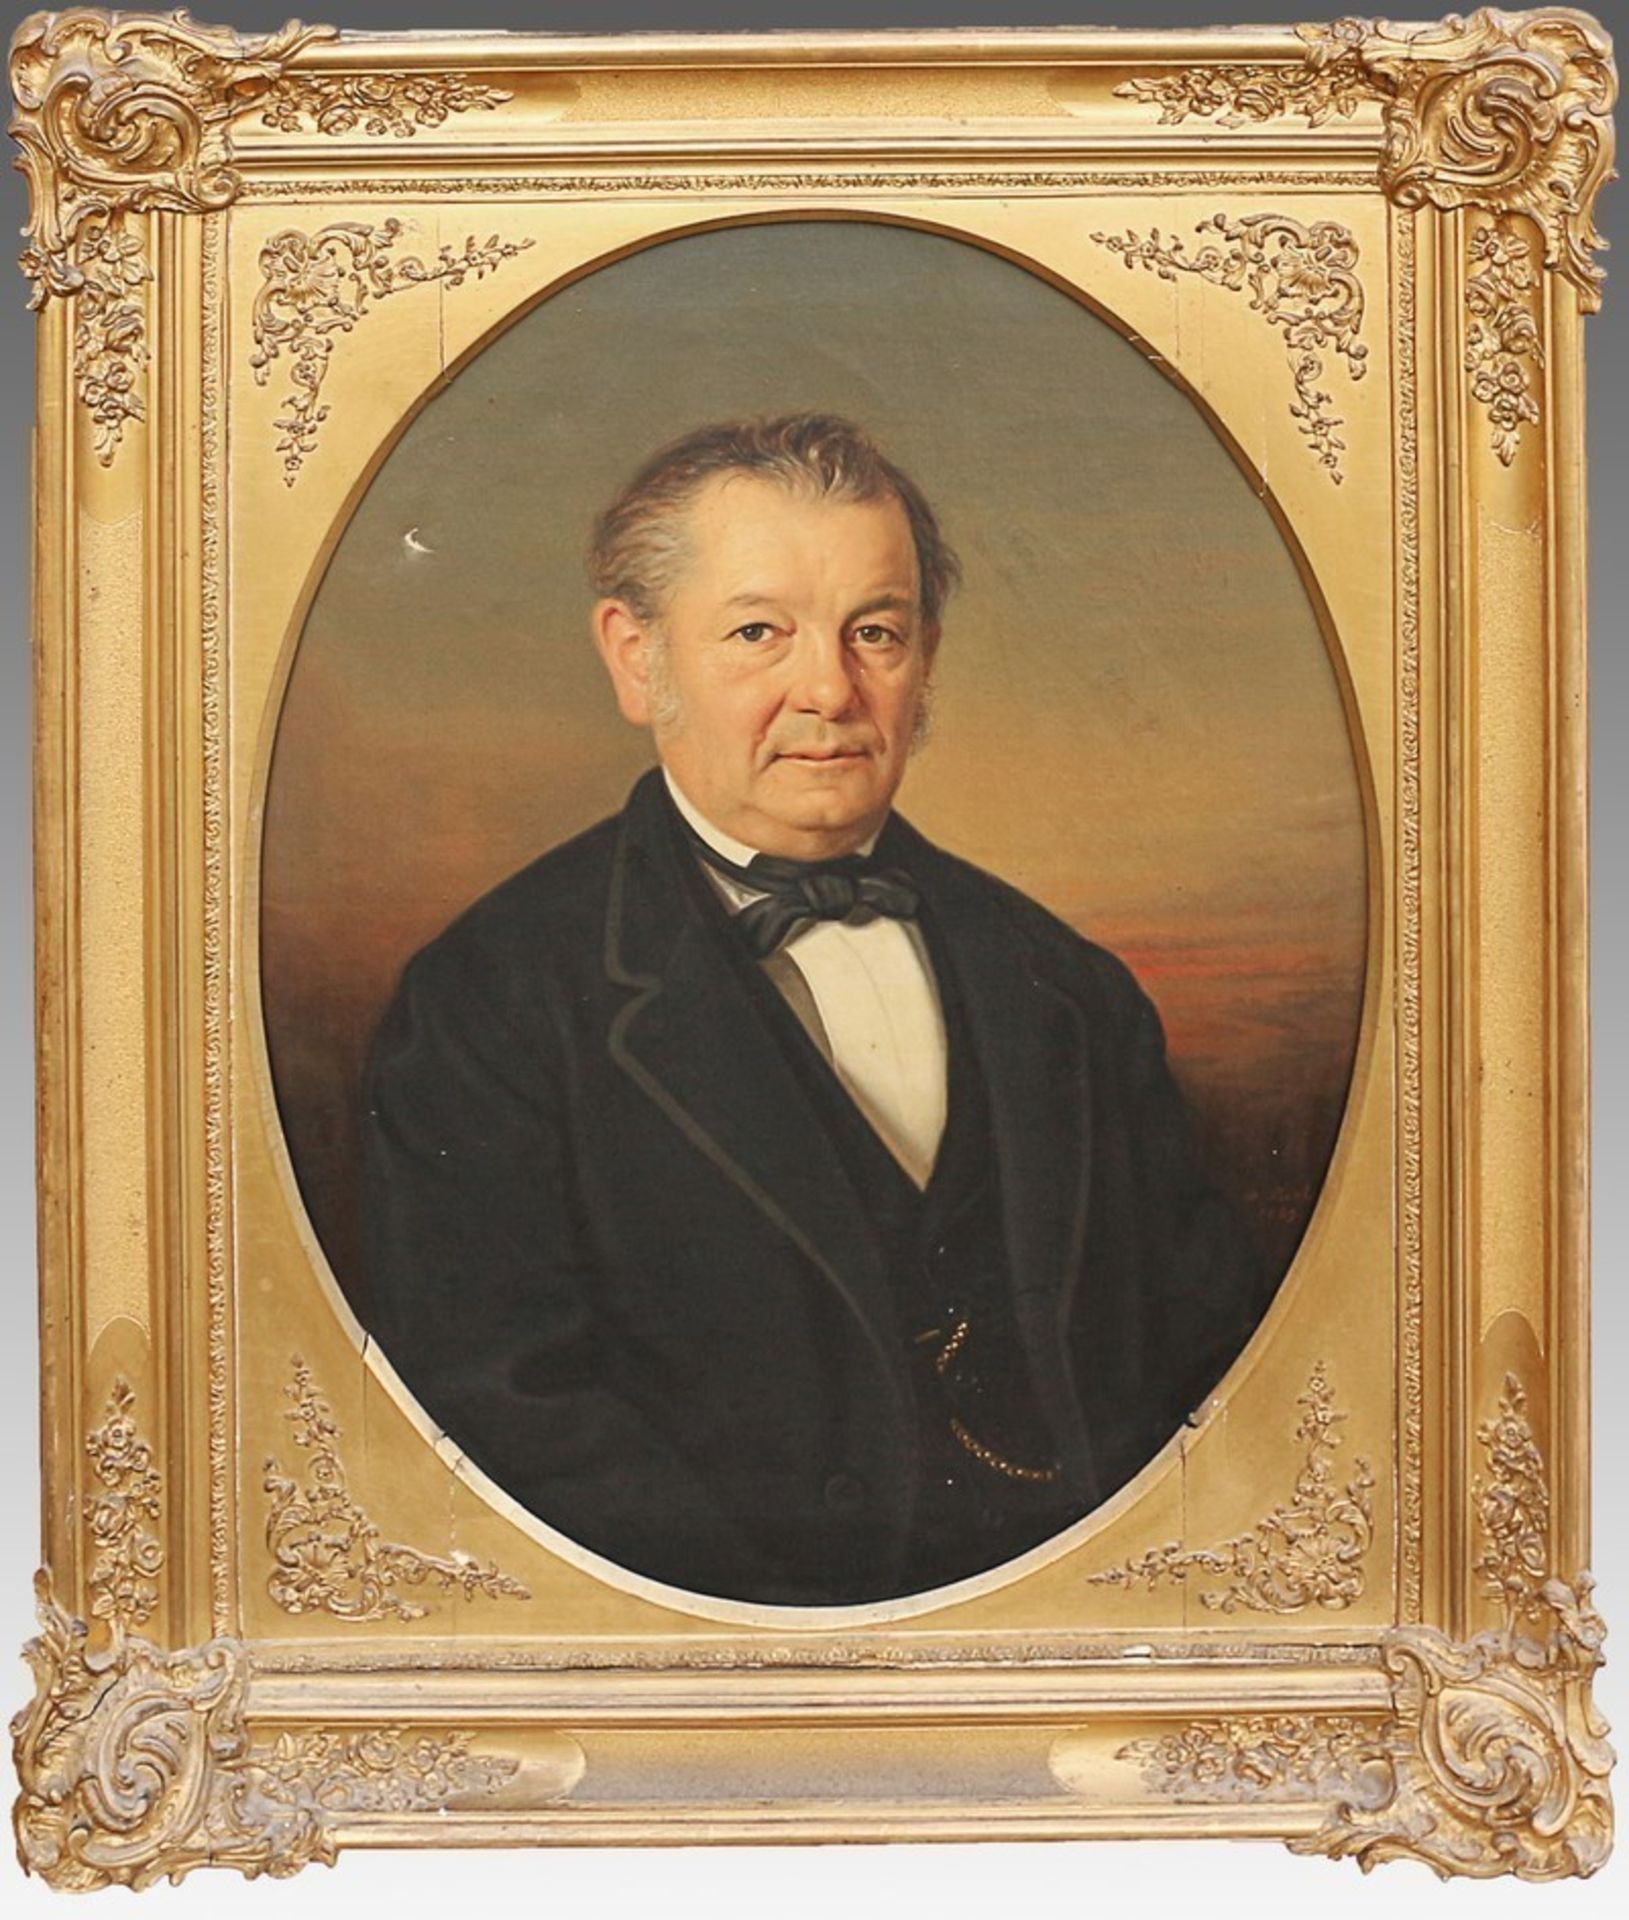 Boch, Adolfwohl Adolf Boch, 1853 Bregenz - 1919 Hörbranz, "Biedermeierportrait eines Herren im